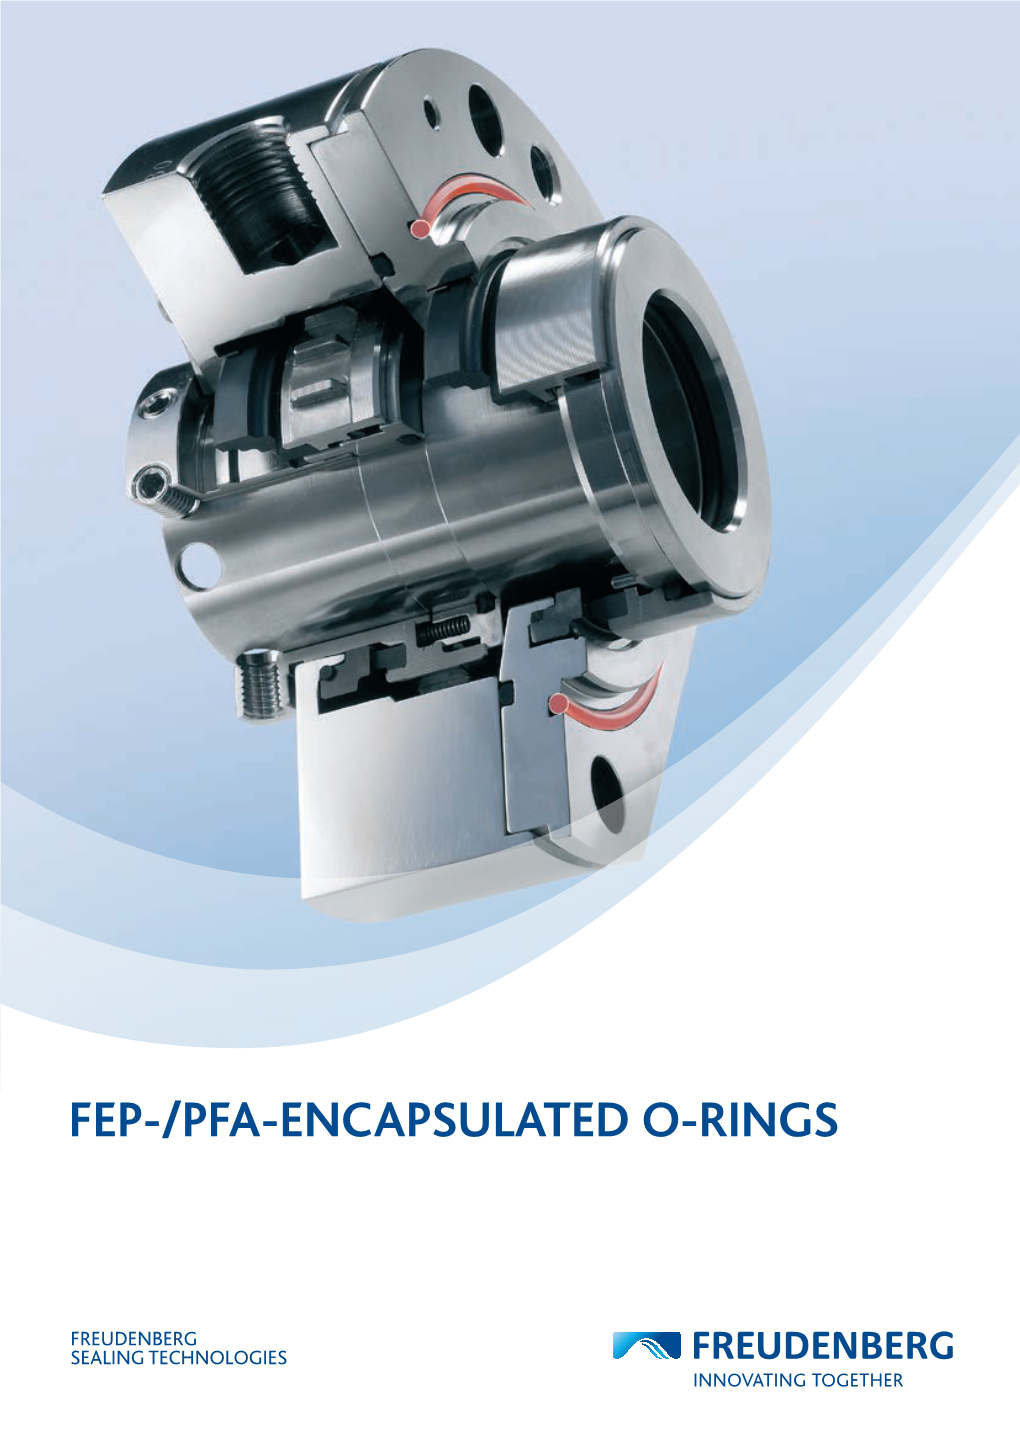 Fep-/Pfa-Encapsulated O-Rings